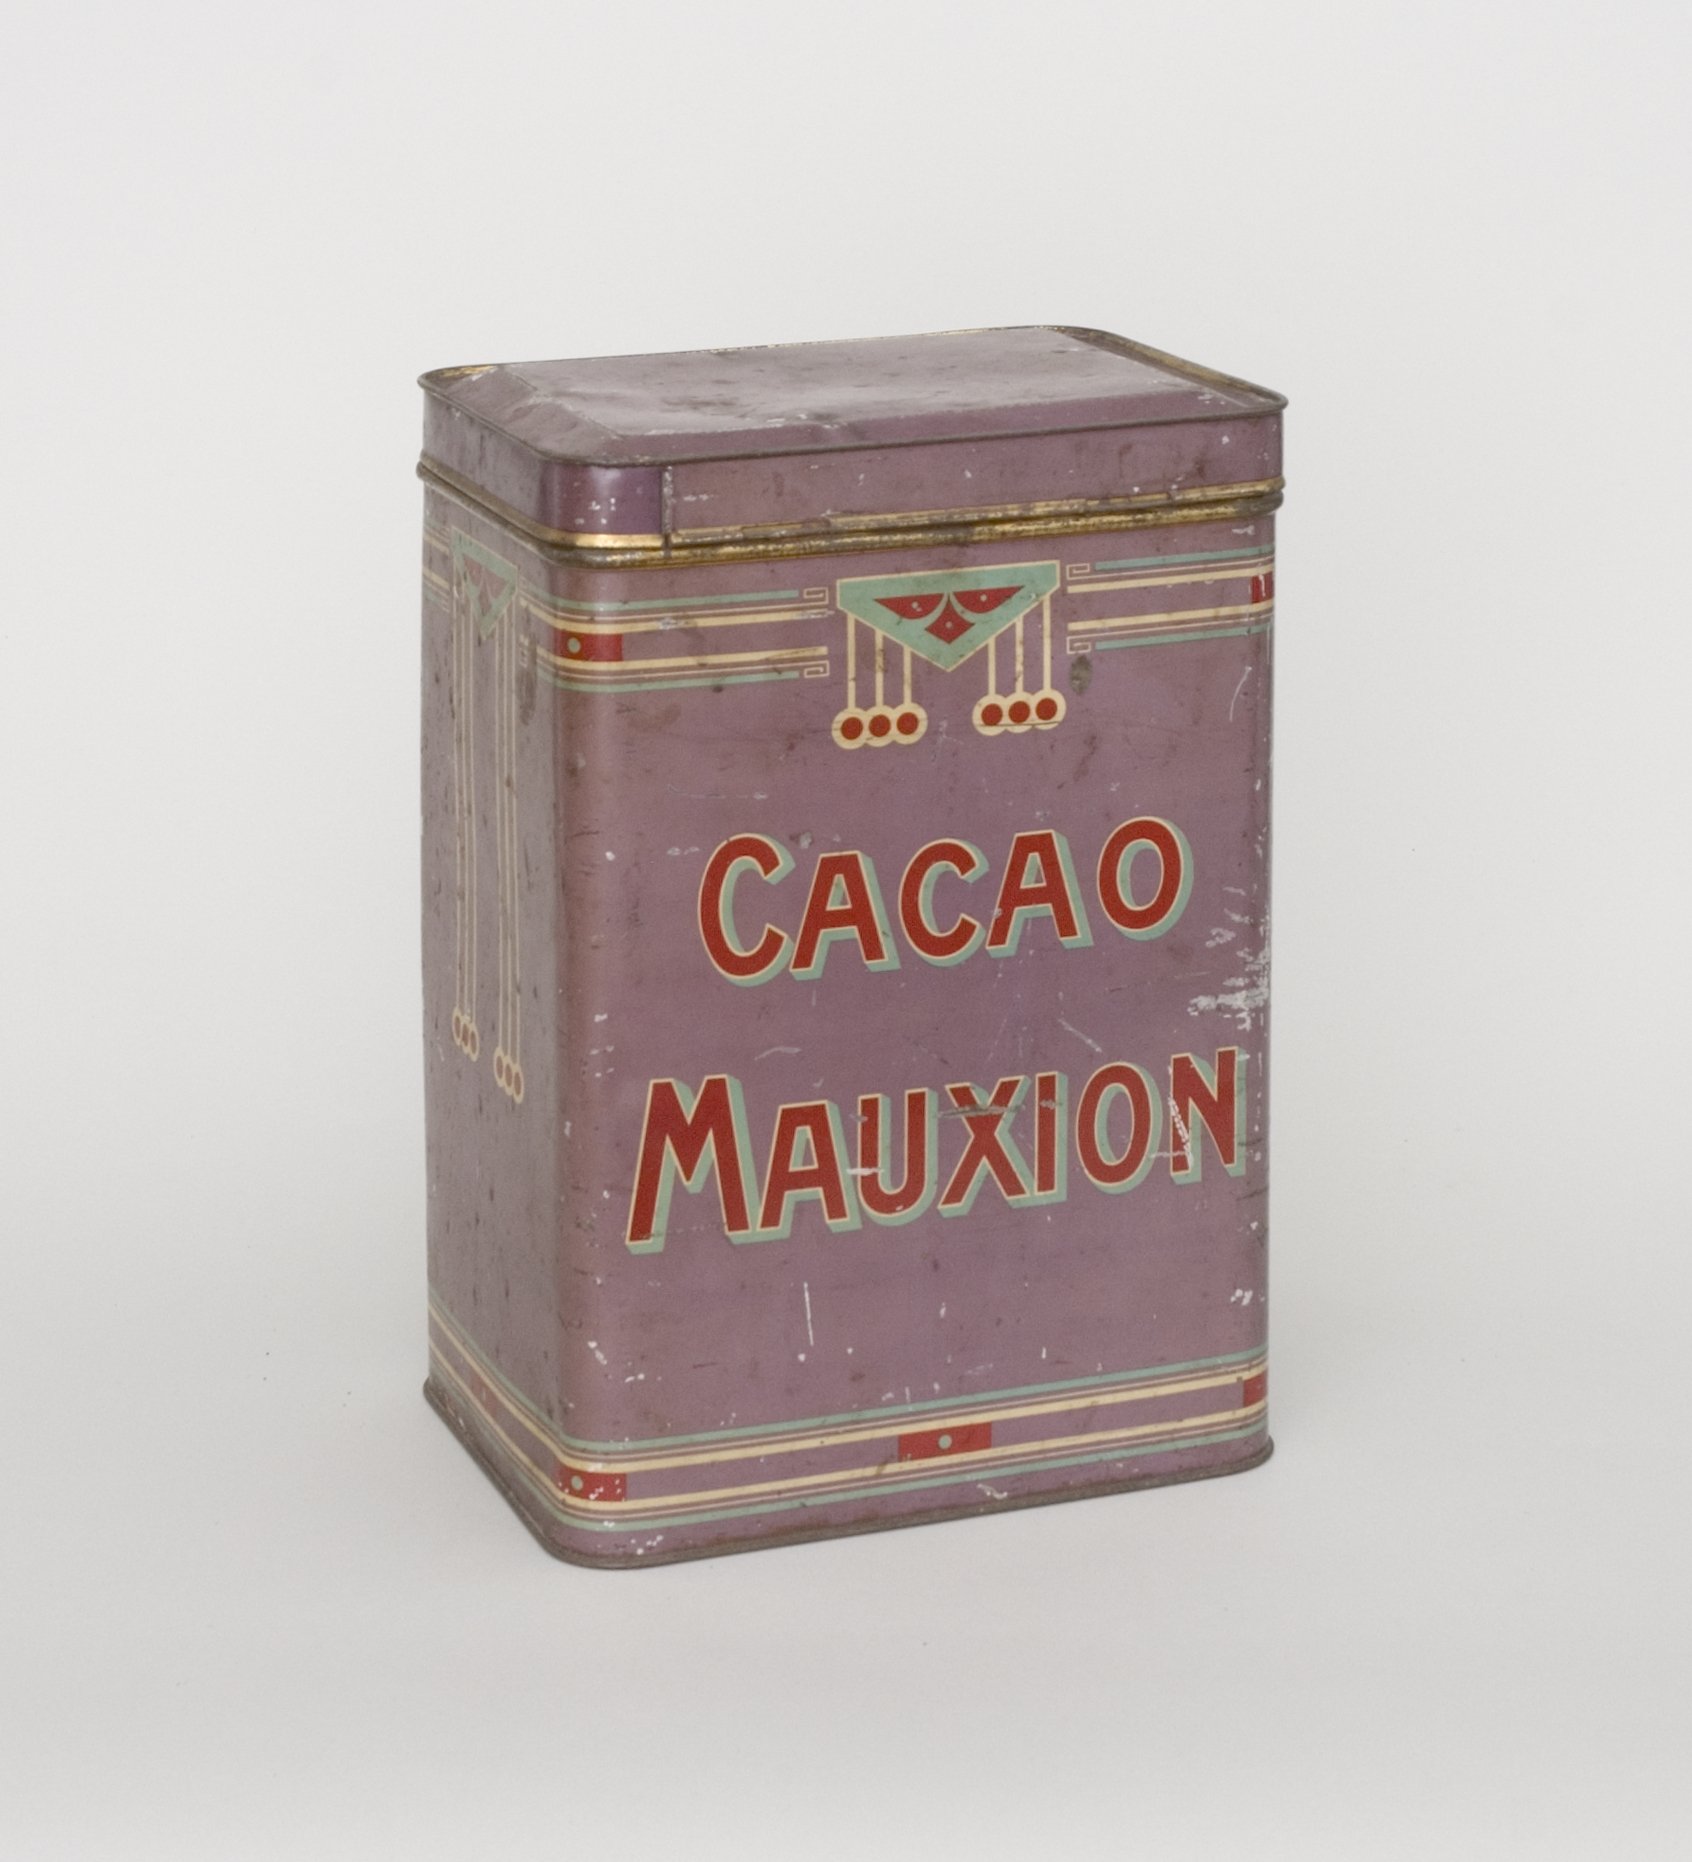 Vorratsdose "Mauxion Cacao" (Stiftung Domäne Dahlem - Landgut und Museum, Weiternutzung nur mit Genehmigung des Museums CC BY-NC-SA)